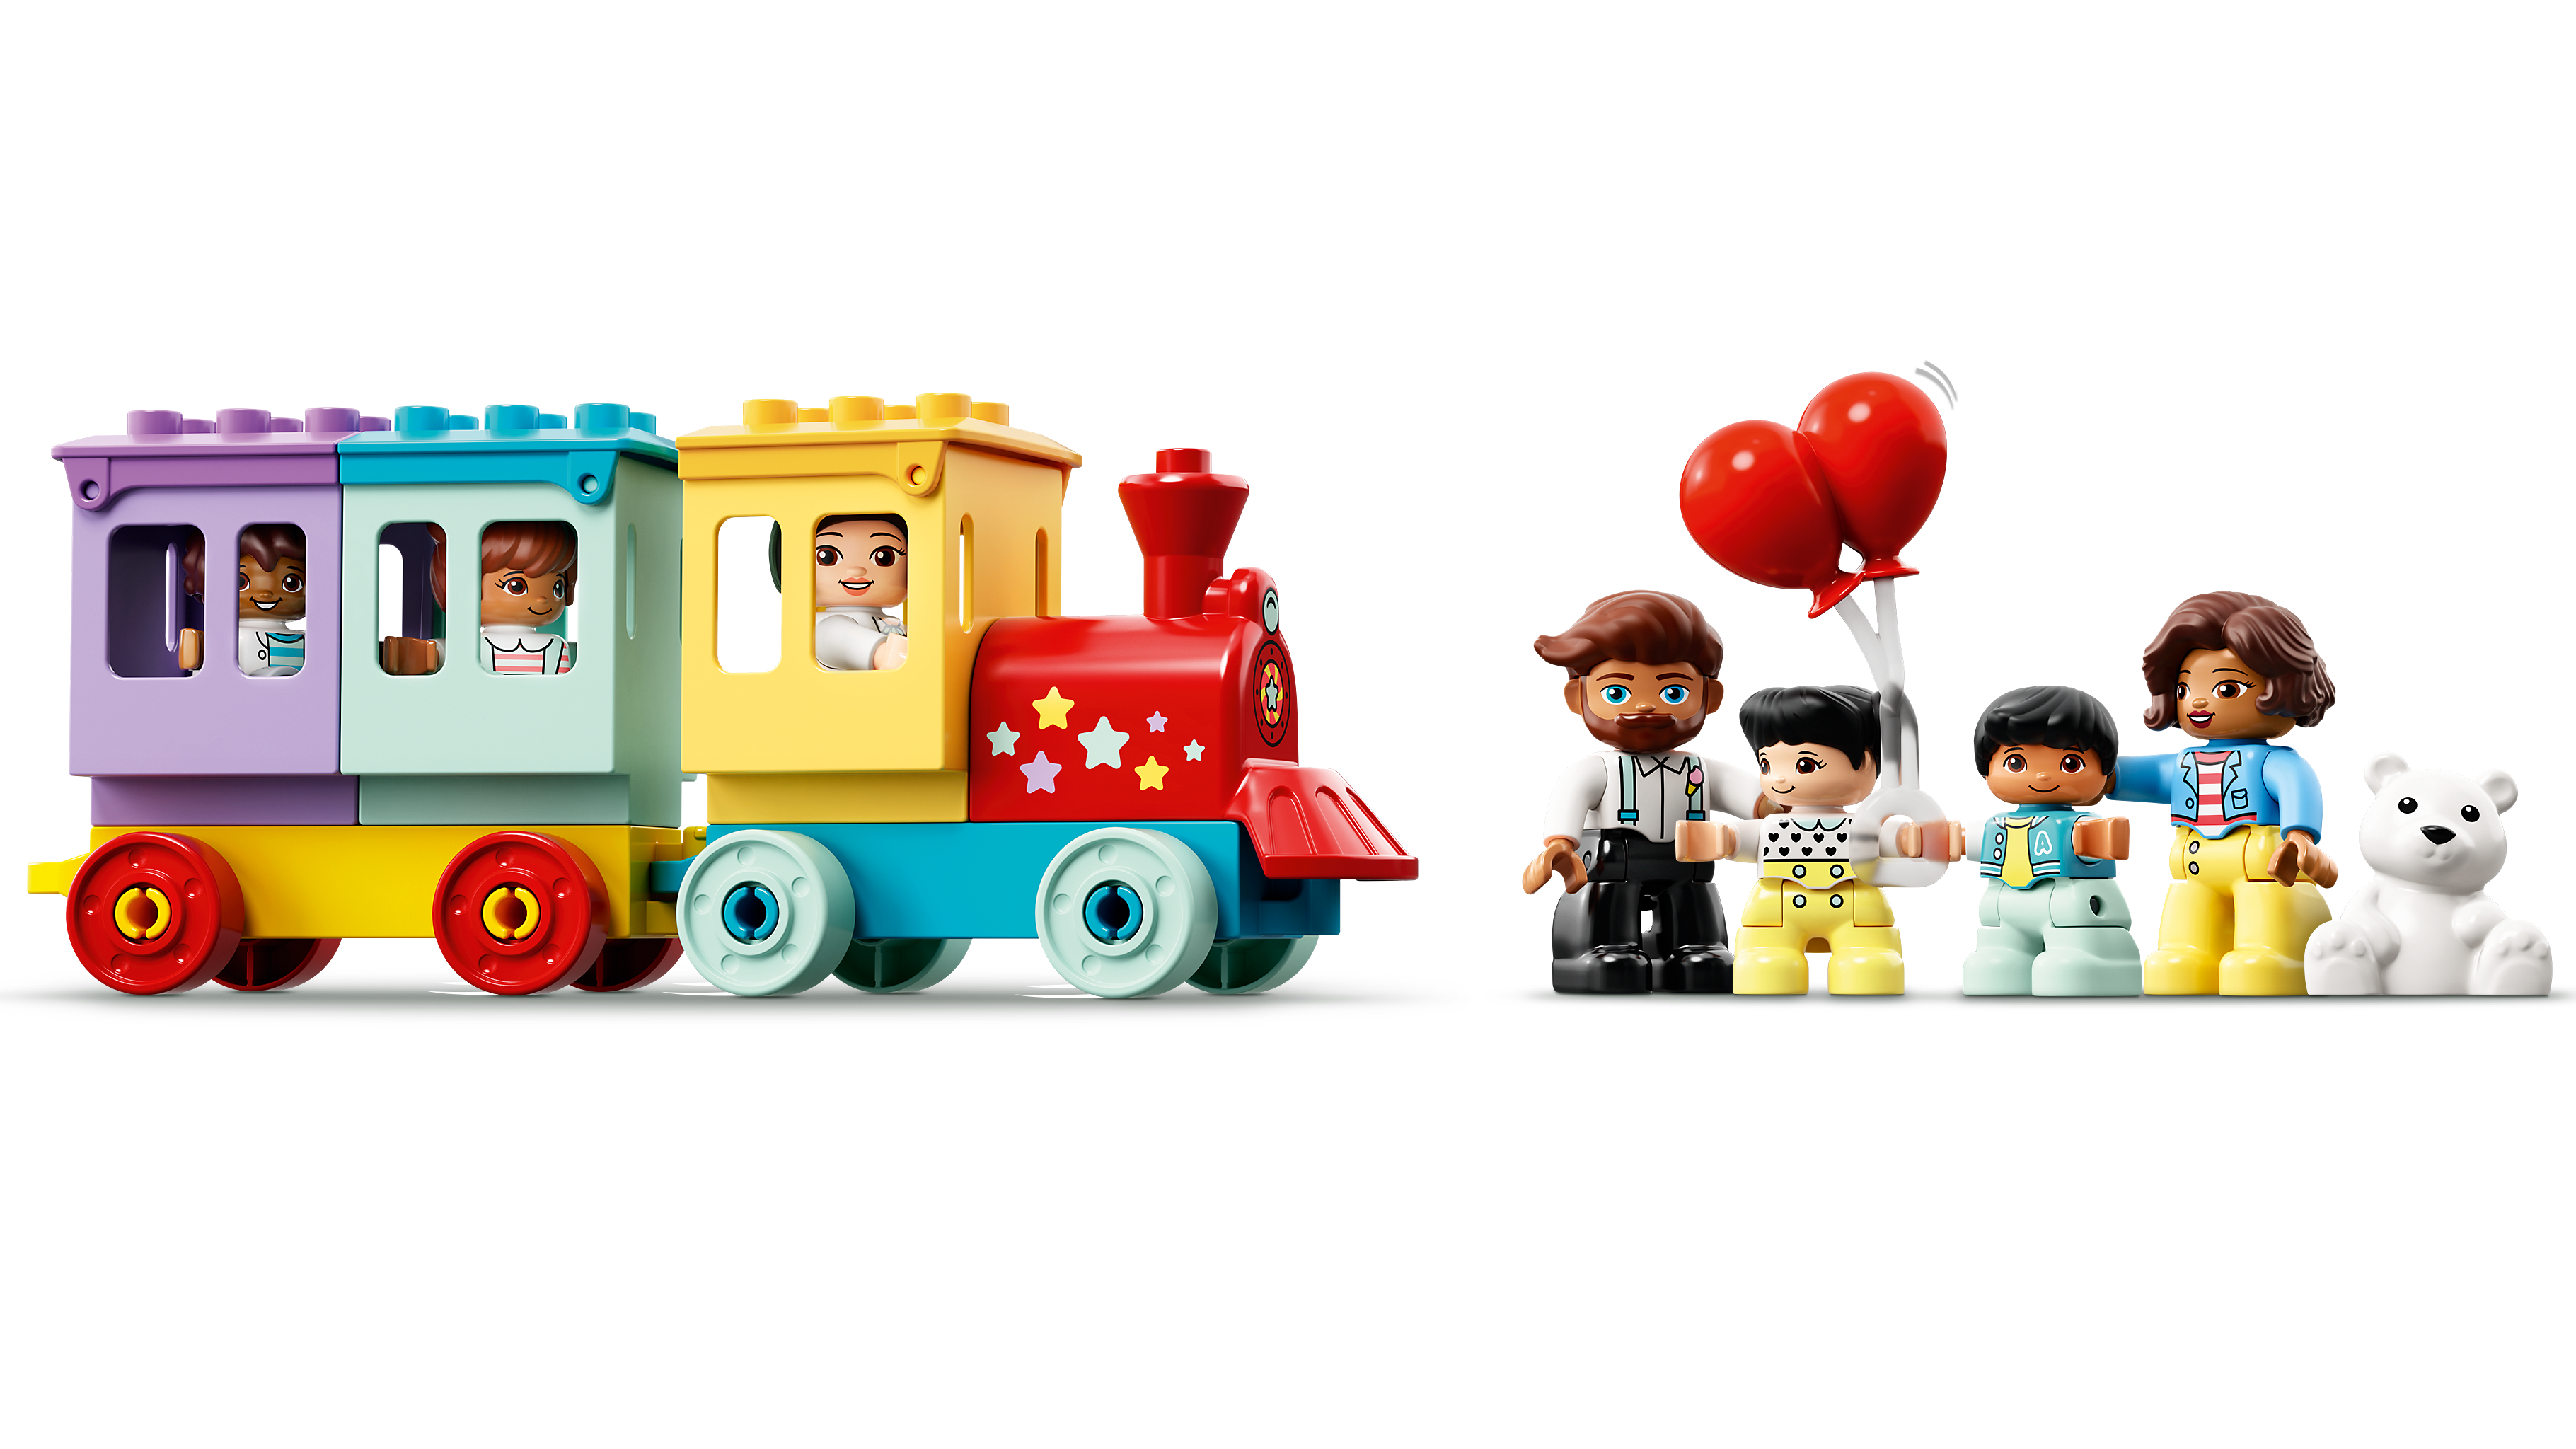 LEGO 10956 Duplo Town Le Parc d’Attractions Jouet Enfant 2+ Ans avec Train,  Carrousel et Grande Roue